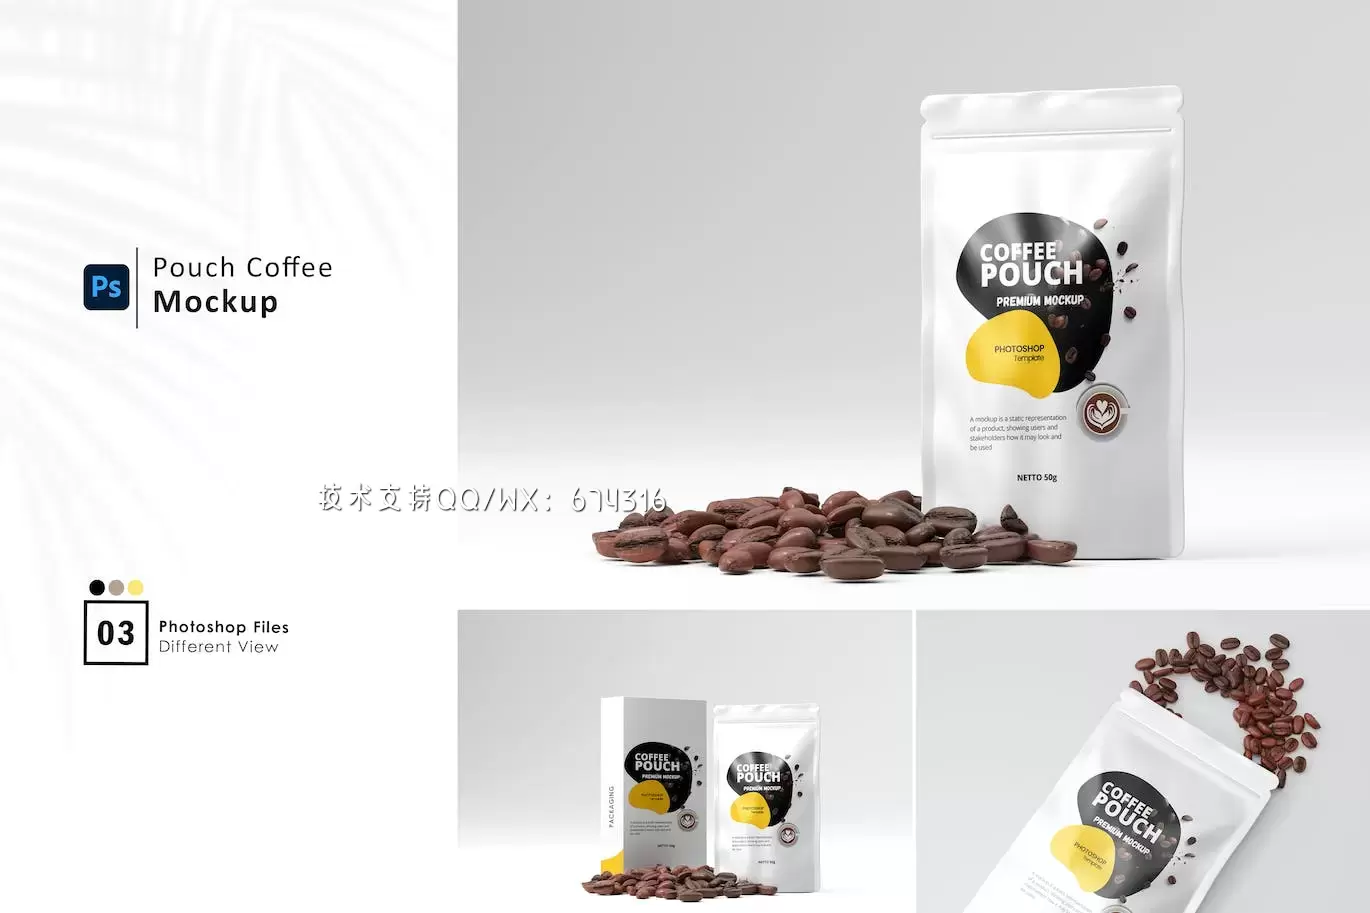 咖啡豆包装袋设计样机 (PSD)免费下载